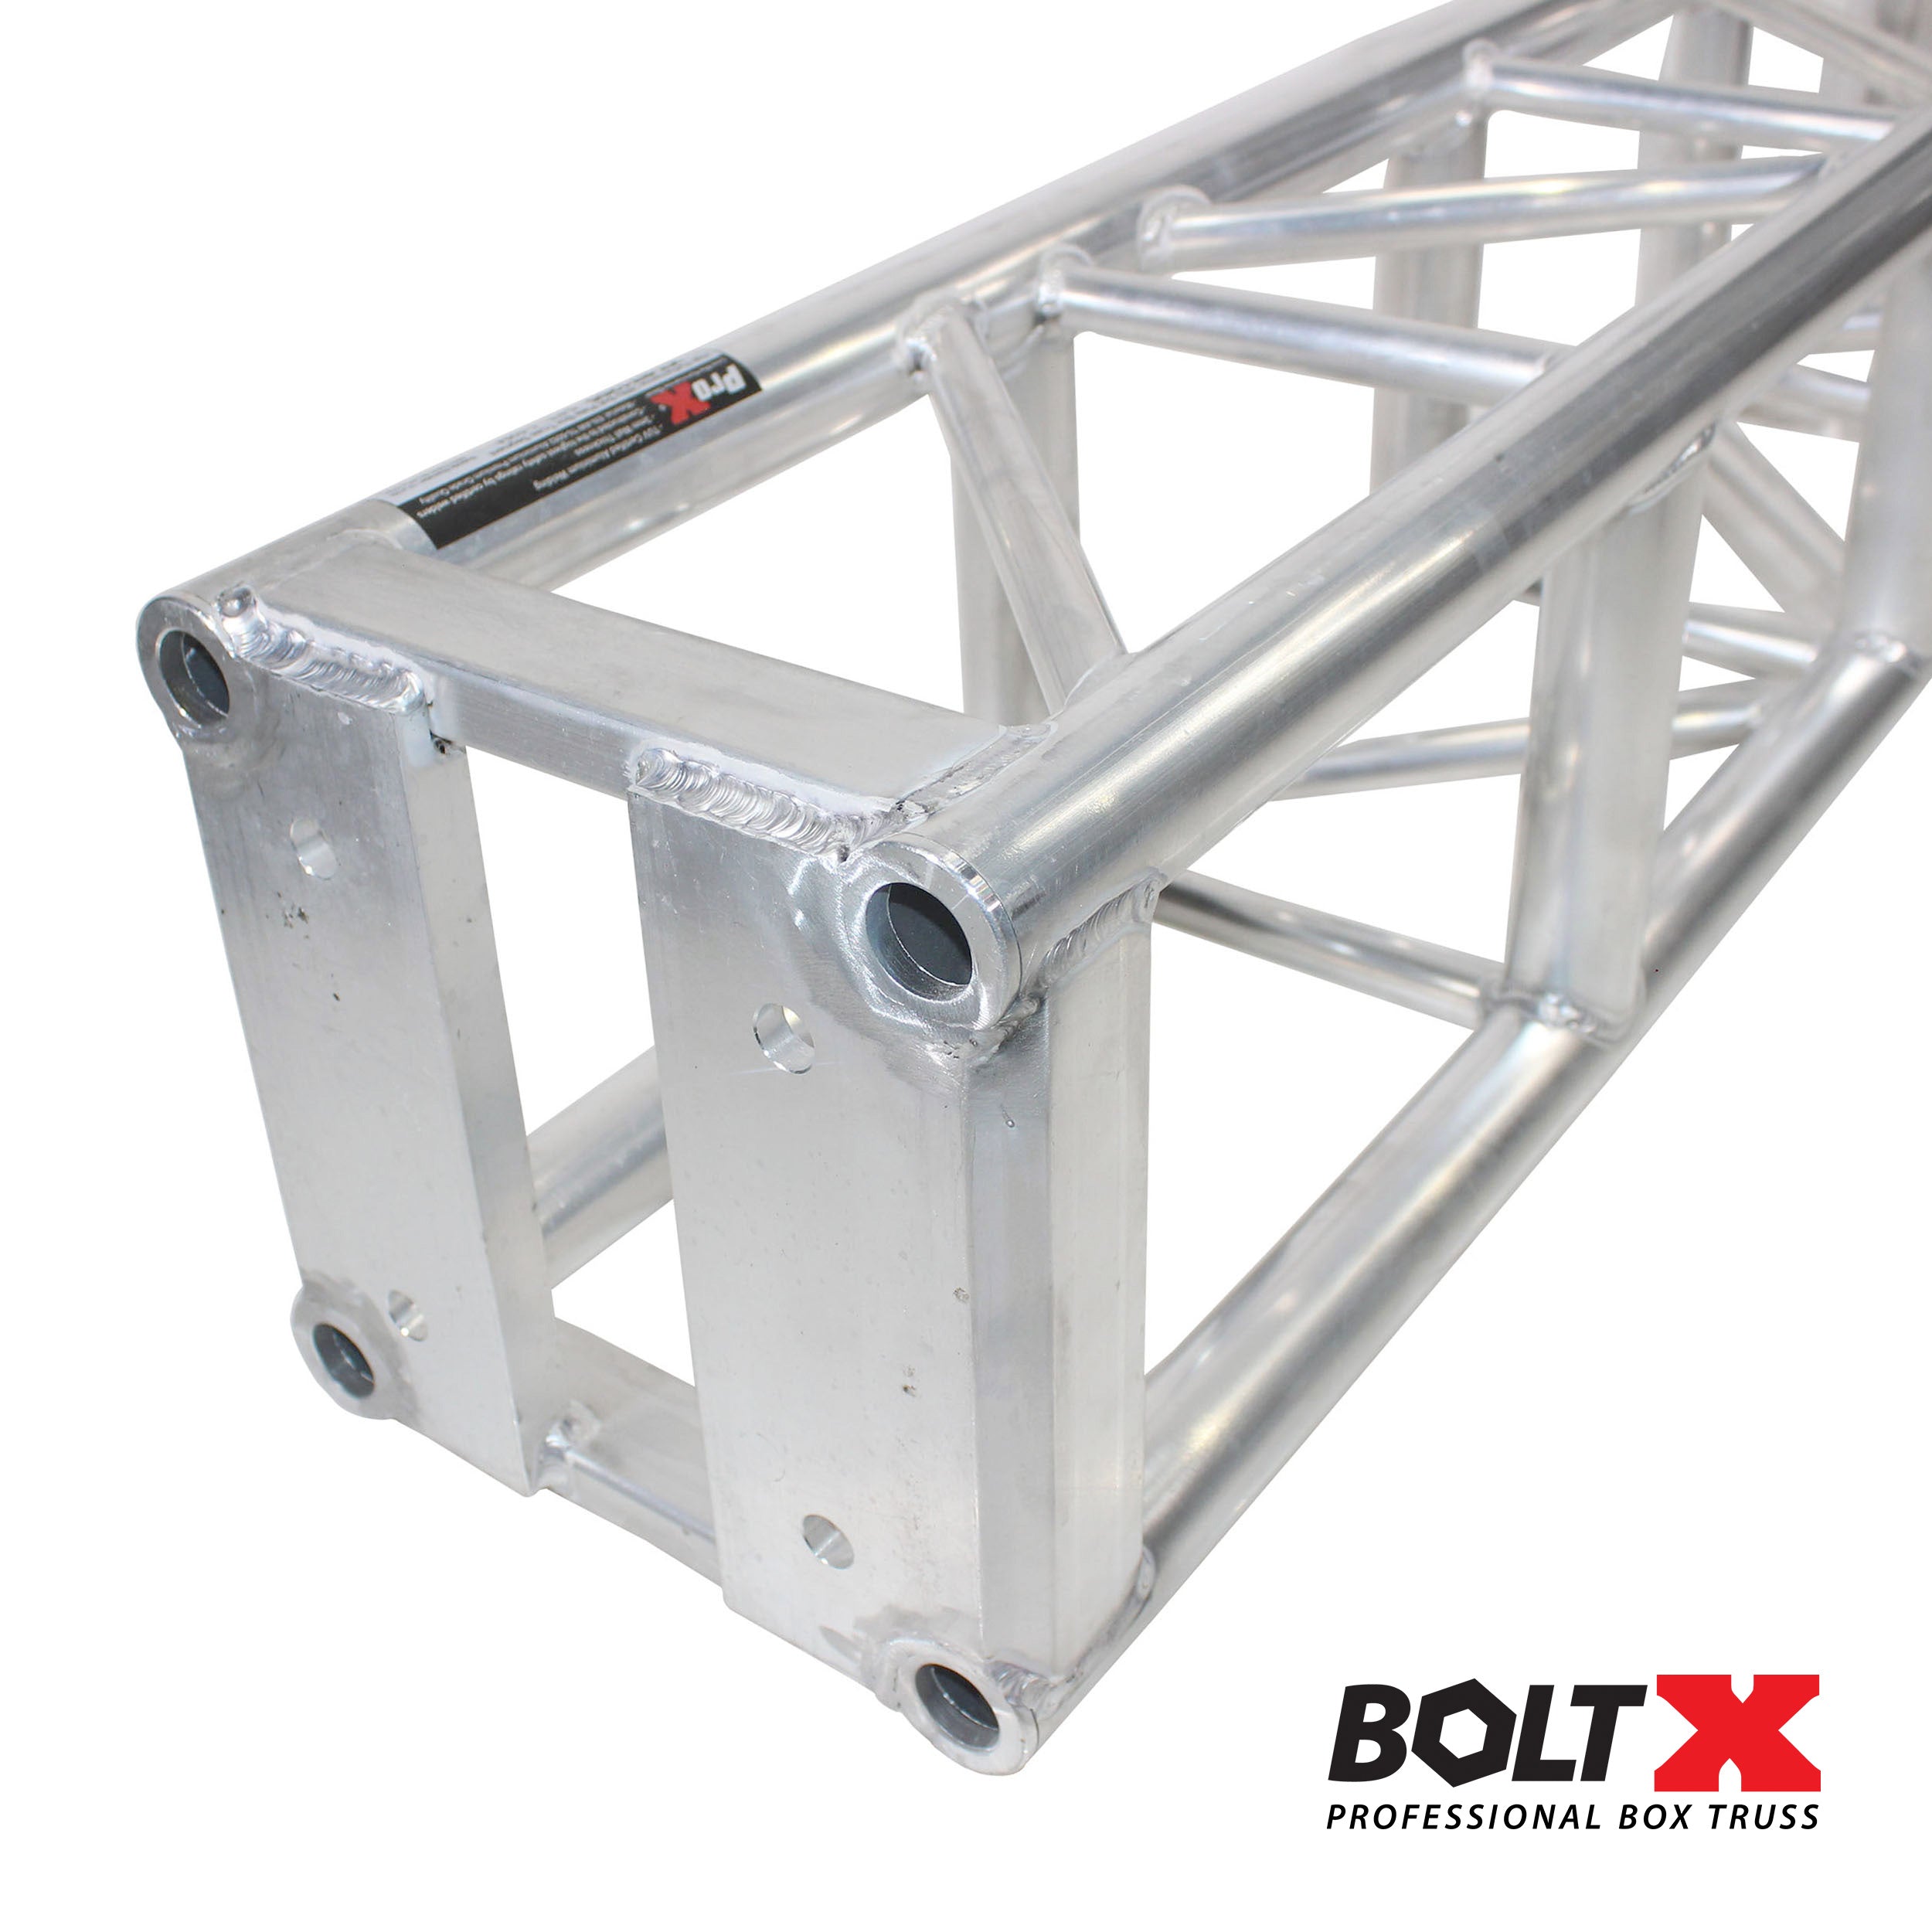 Pro X BoltX 12" inch Professional Box Truss Segment | 3mm Wall